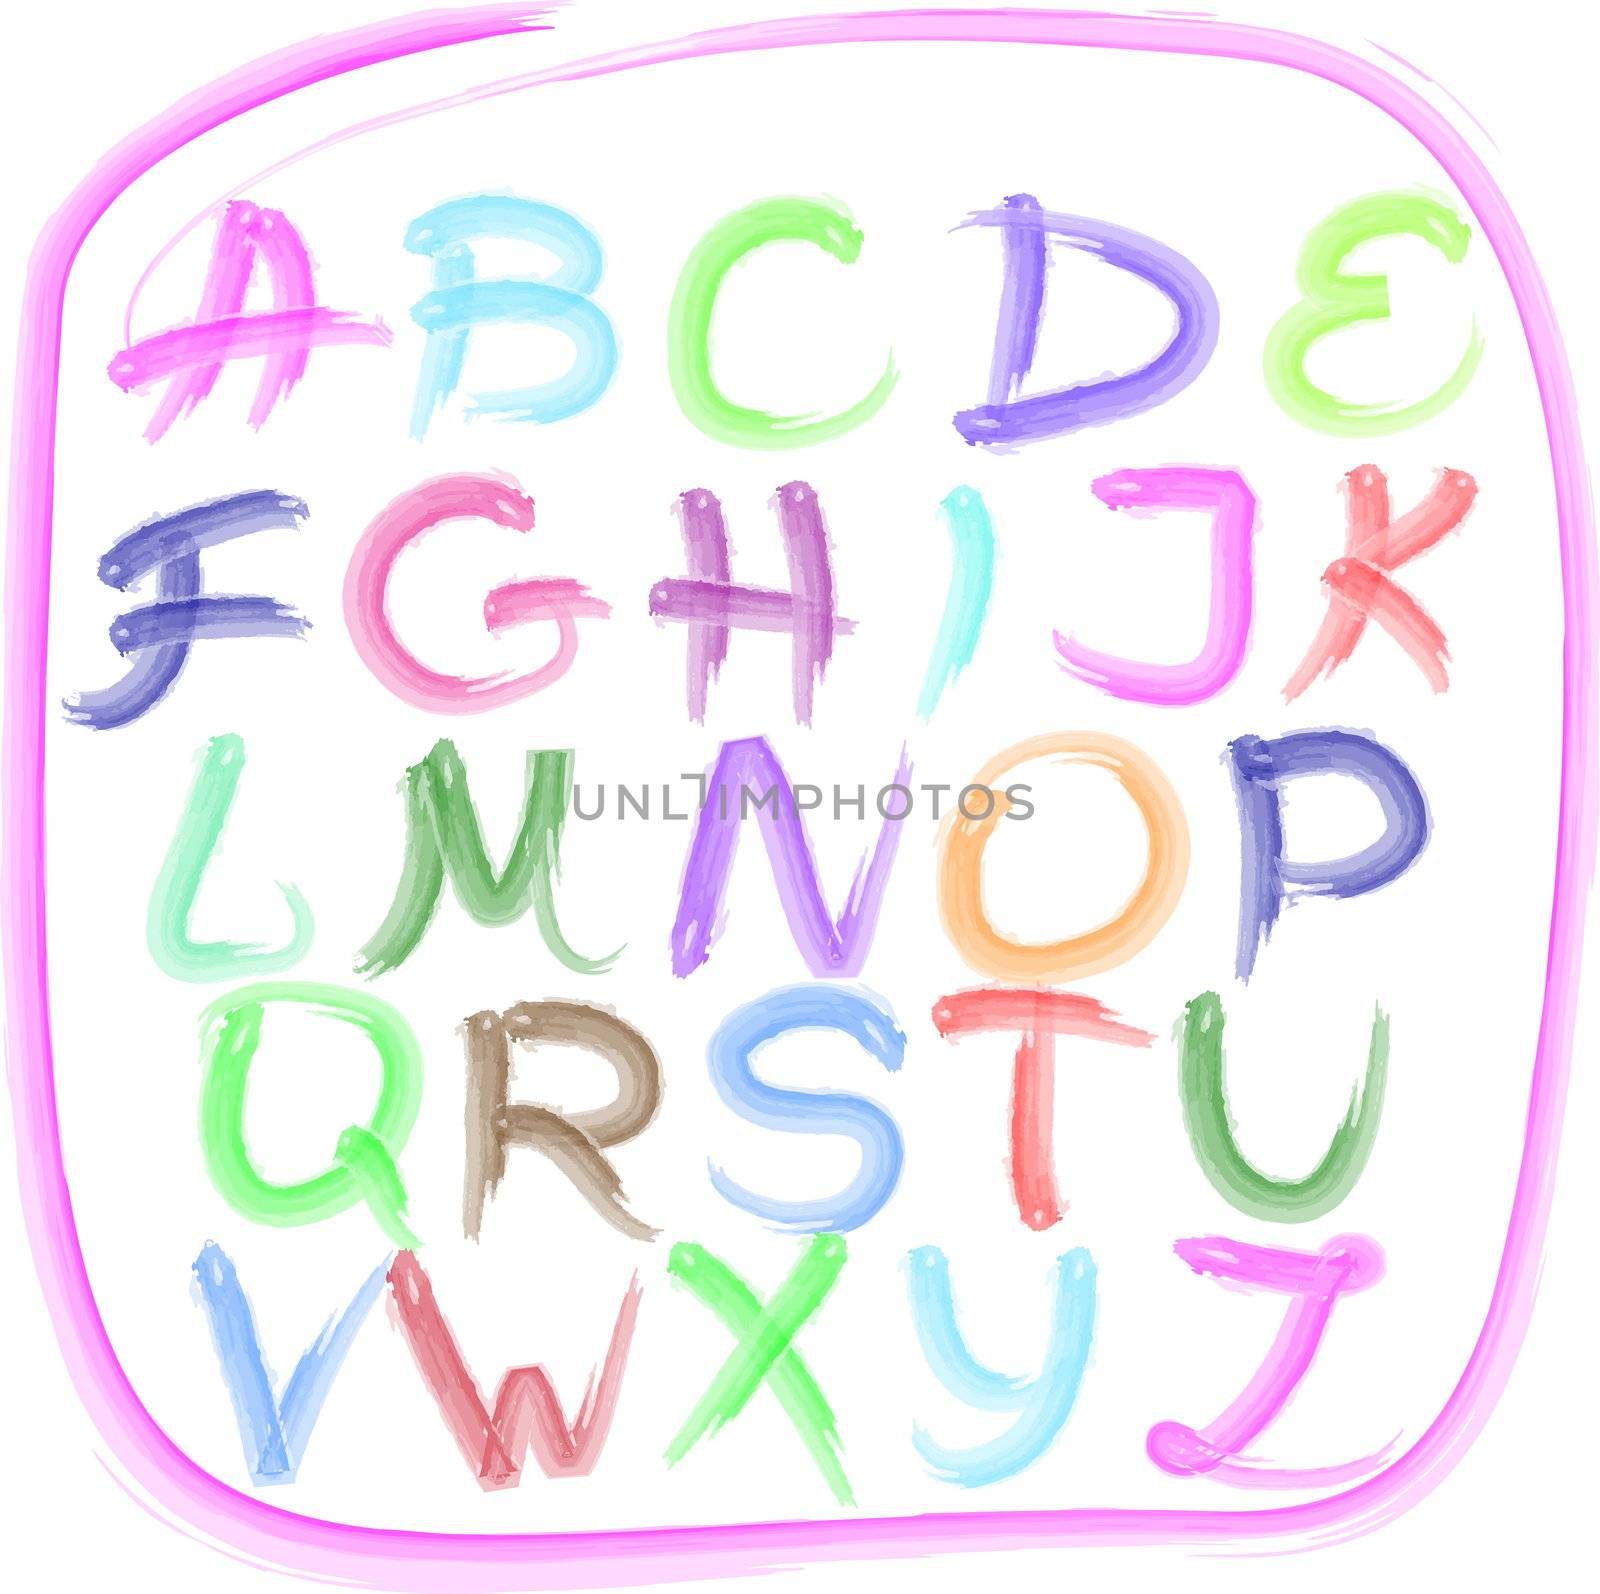 Handwritten alphabet by nat